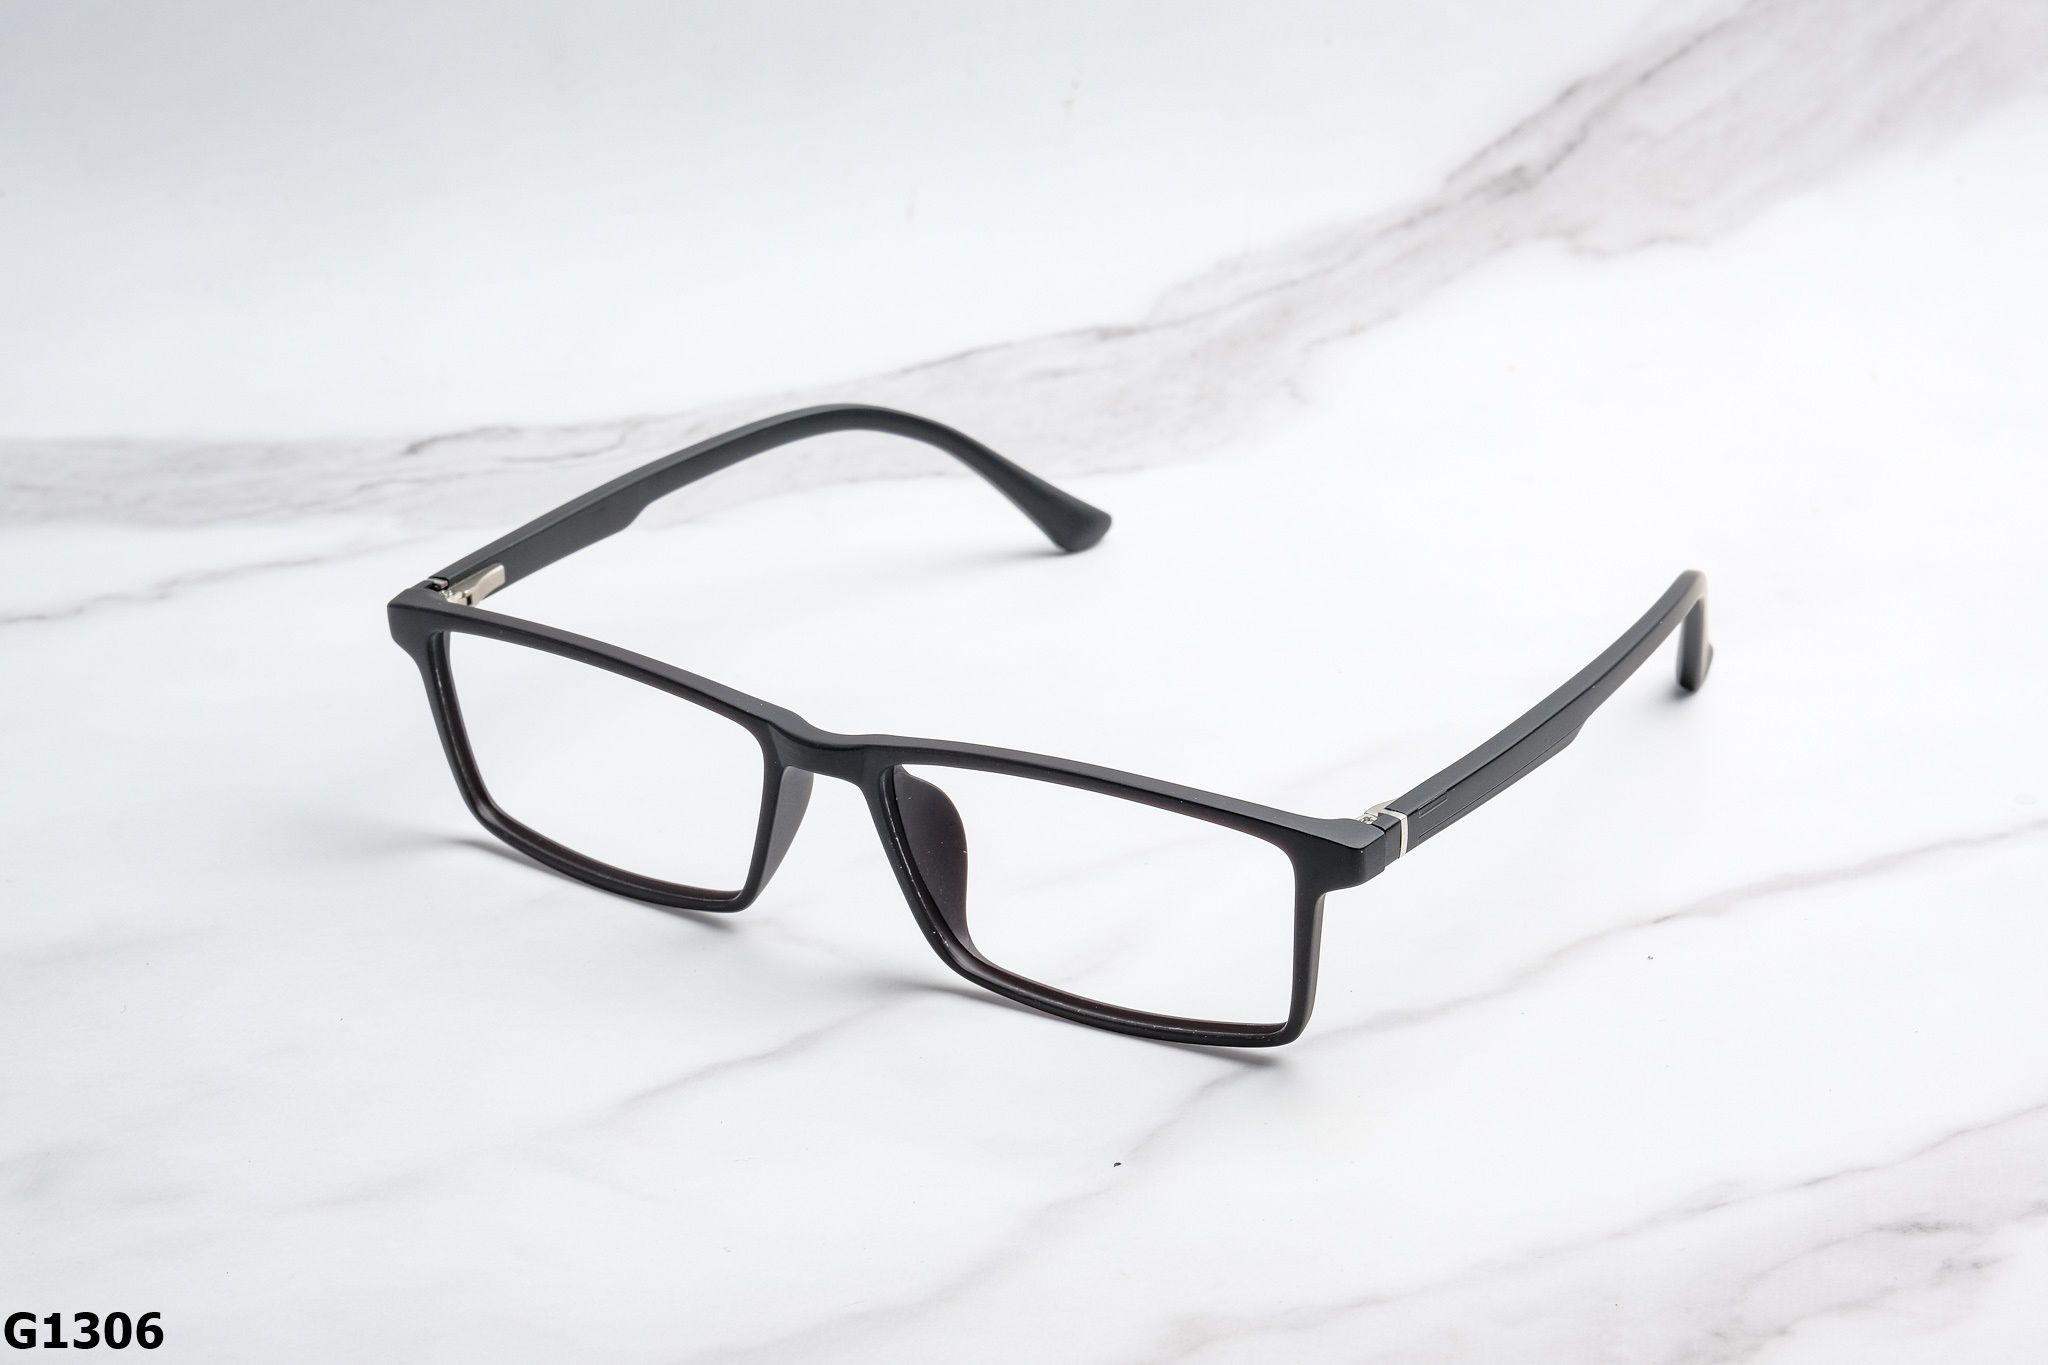  Rex-ton Eyewear - Glasses - G1306 